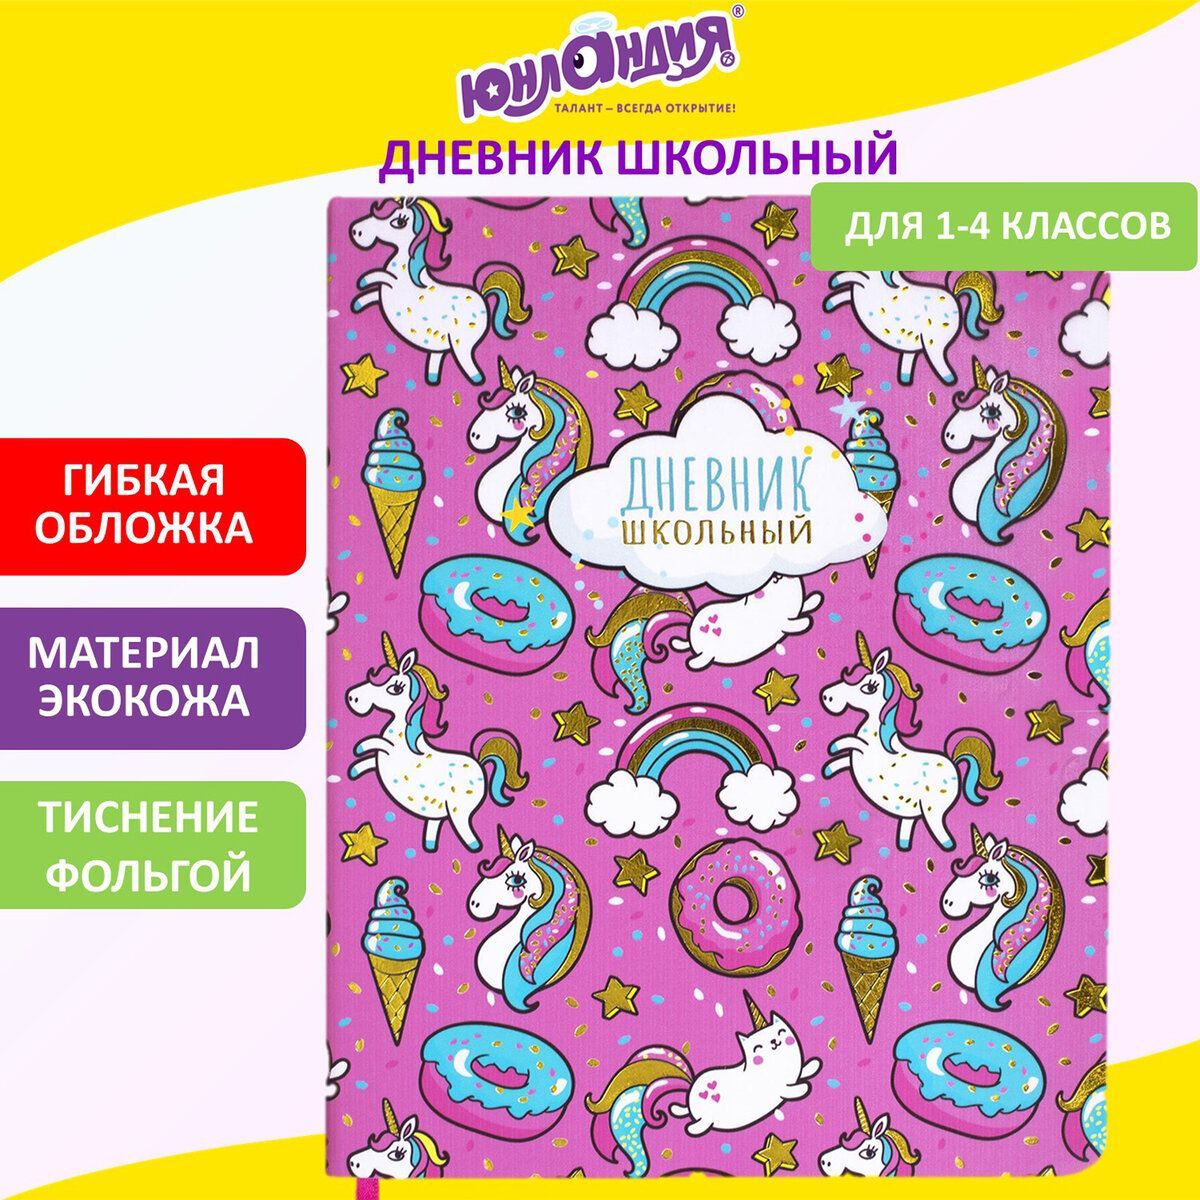 Купить школьный дневник в Москве, цены на недорогие дневники для школьников в интернет-магазине